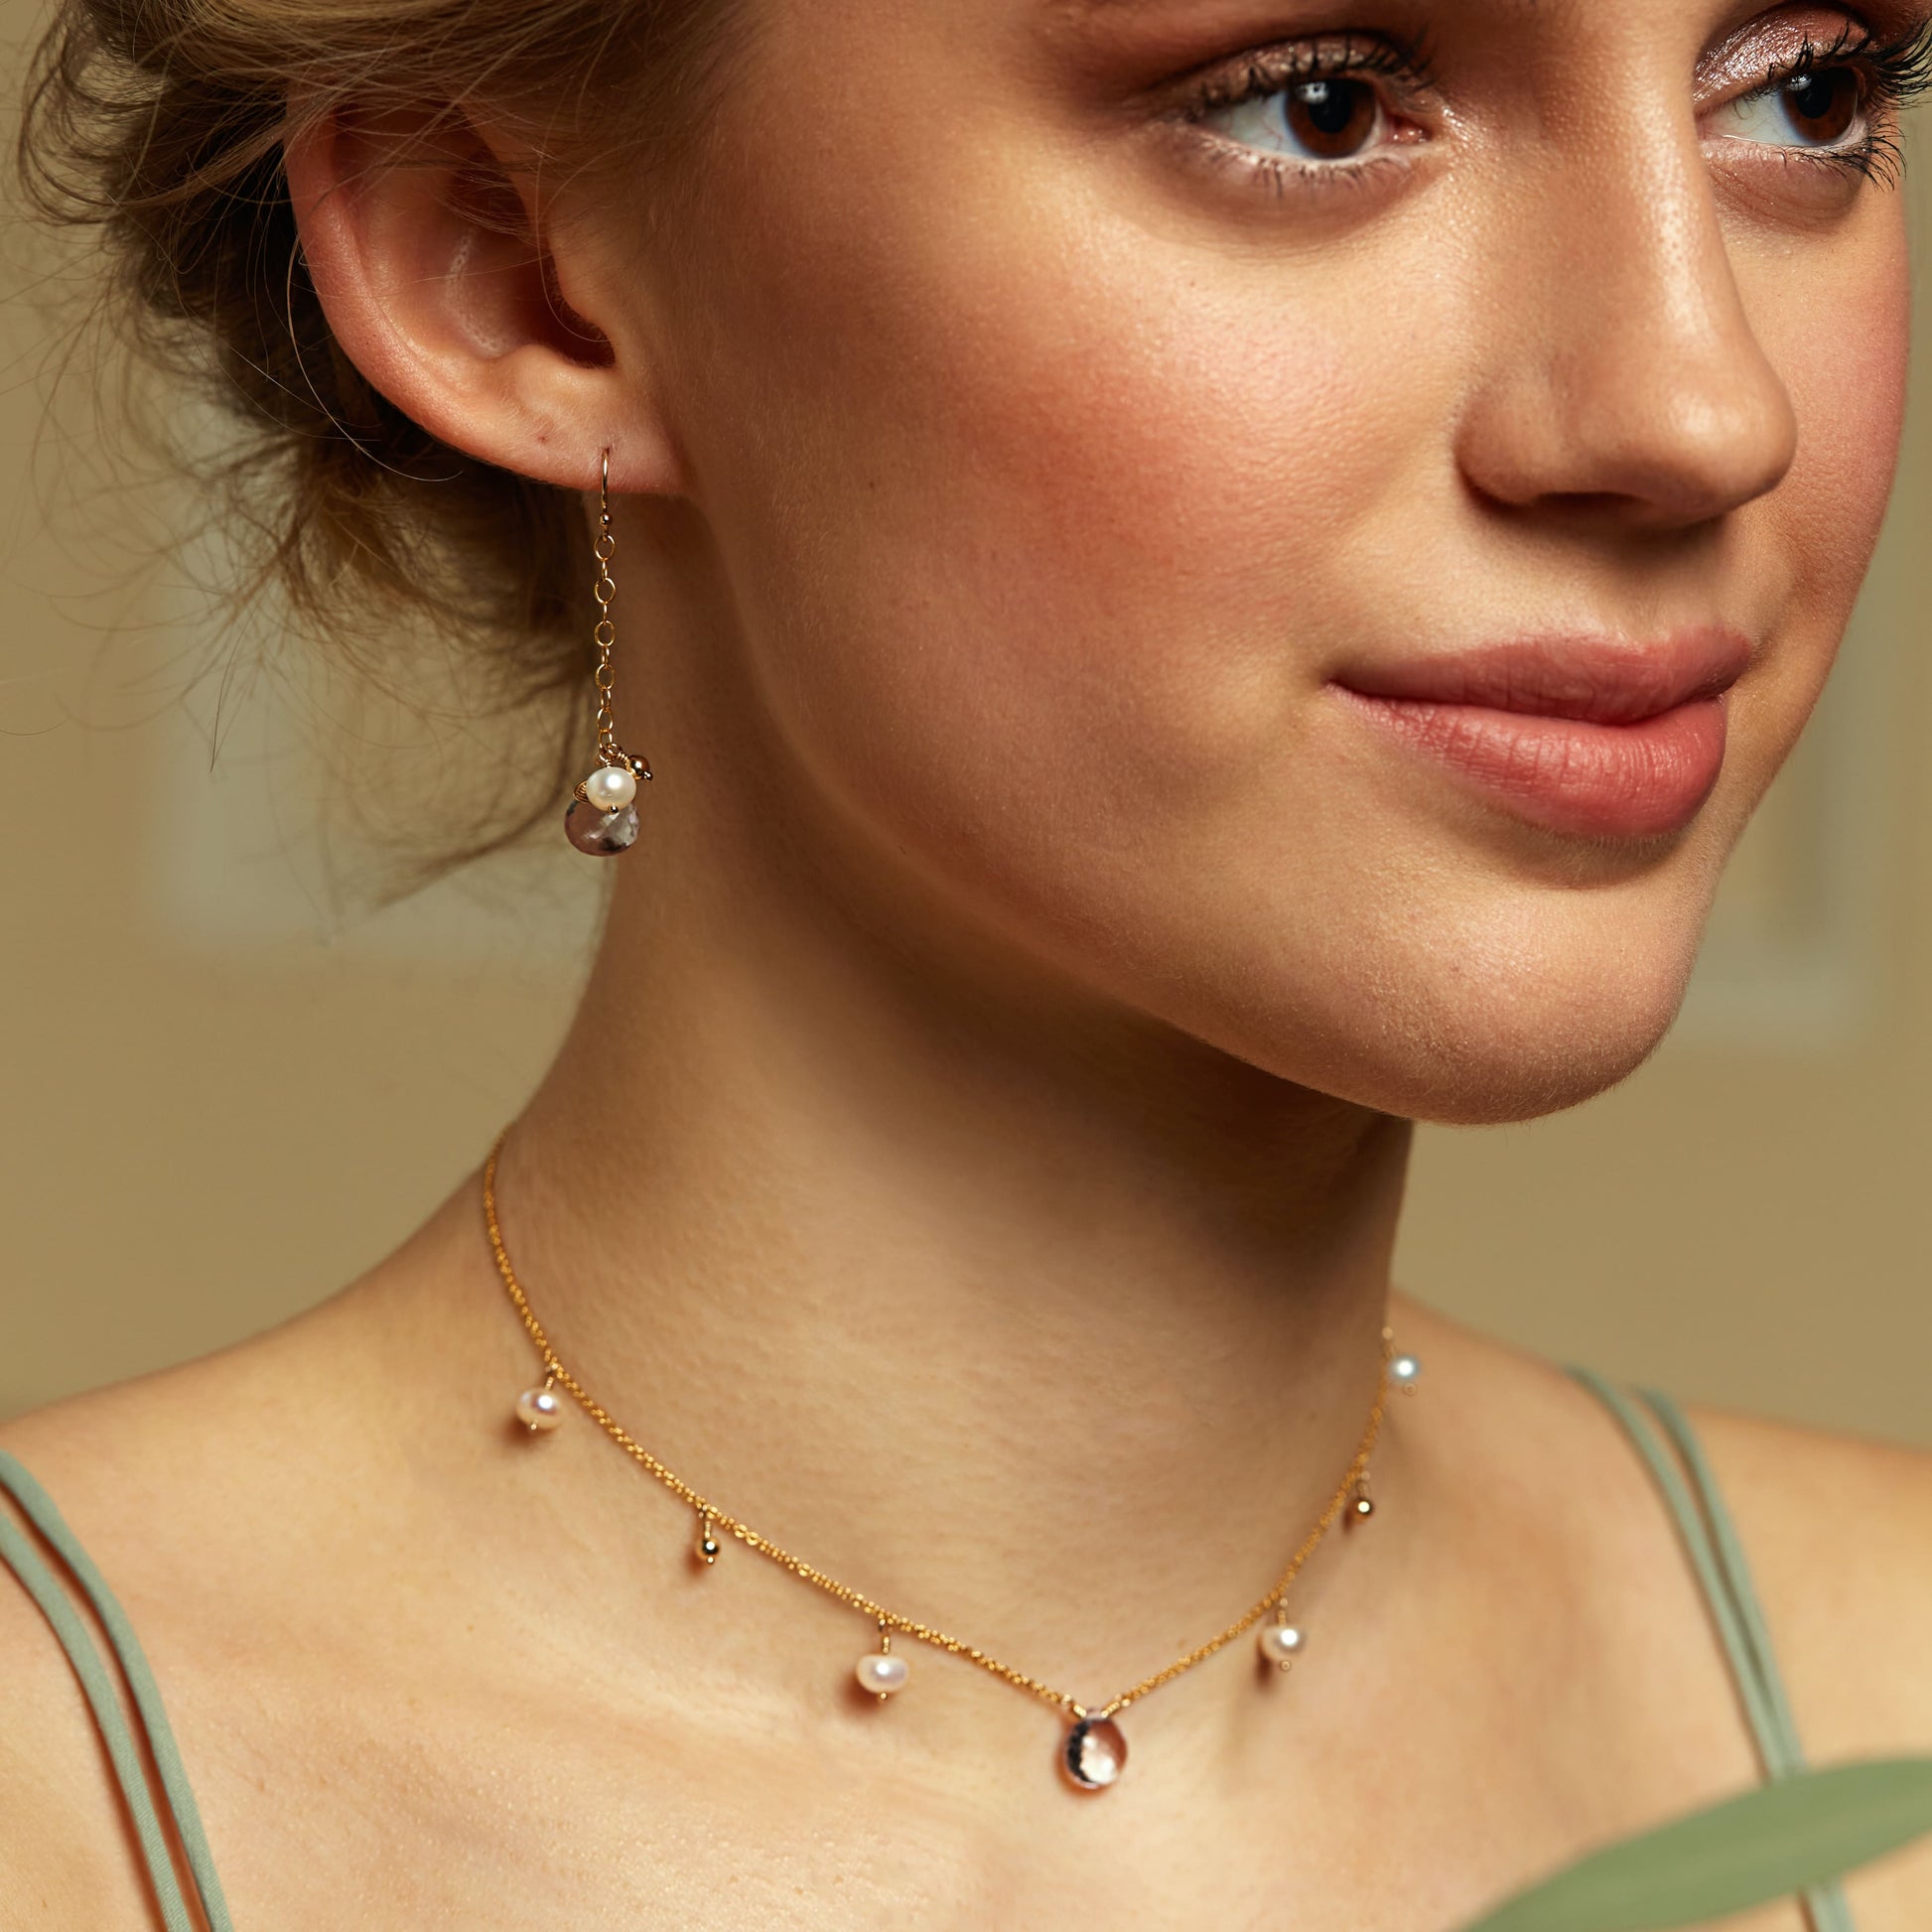 Pearl & Pink Amethyst Earrings - Silver & Gold - Henrietta